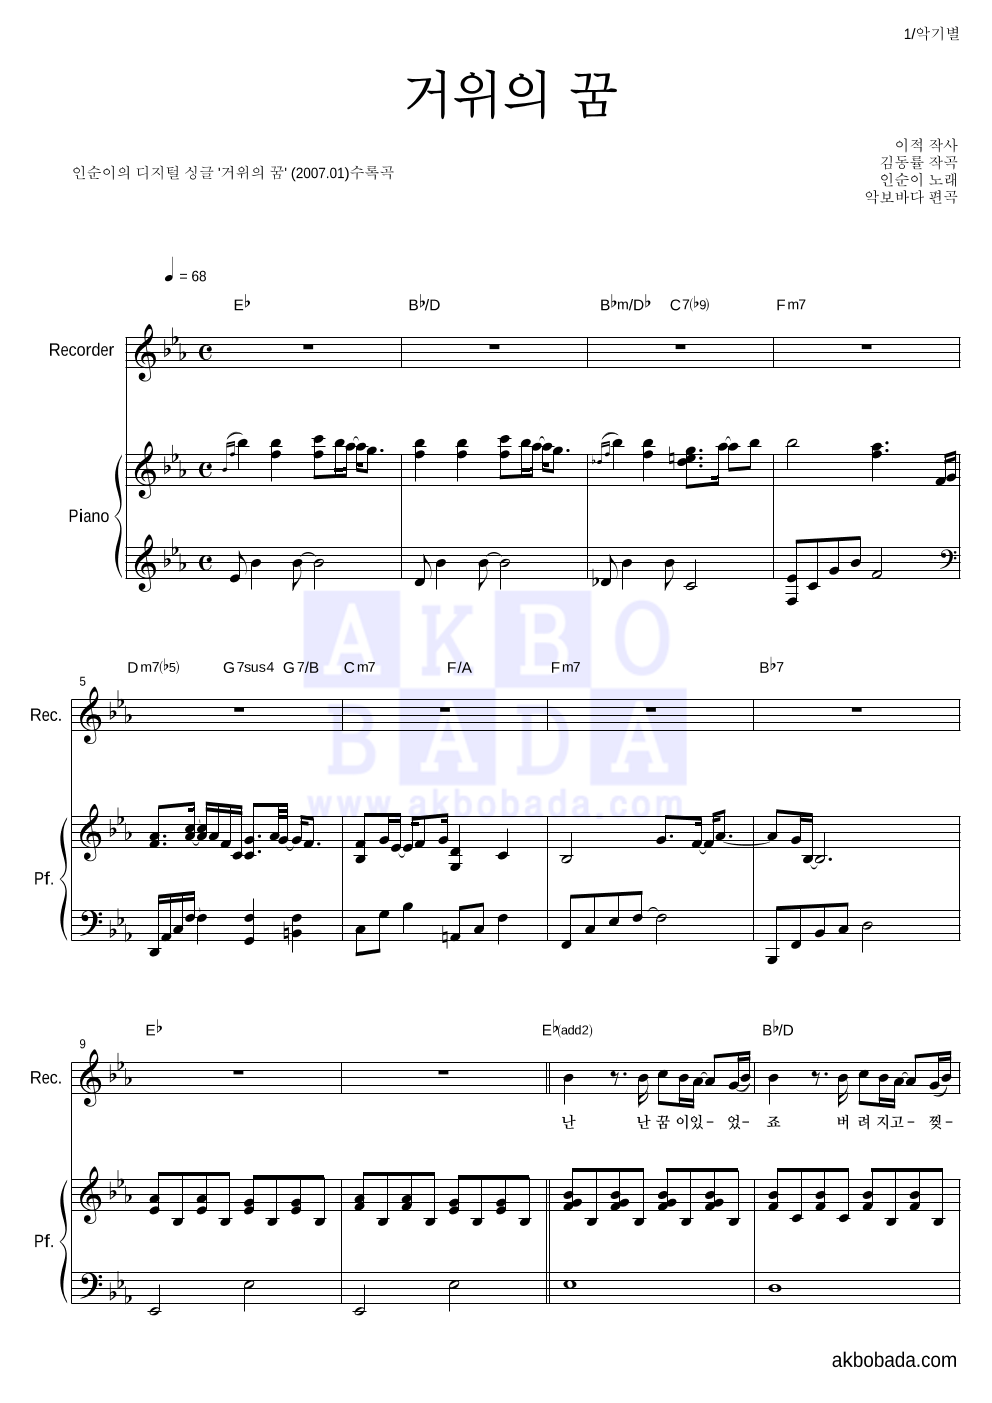 인순이 - 거위의 꿈 리코더&피아노 악보 